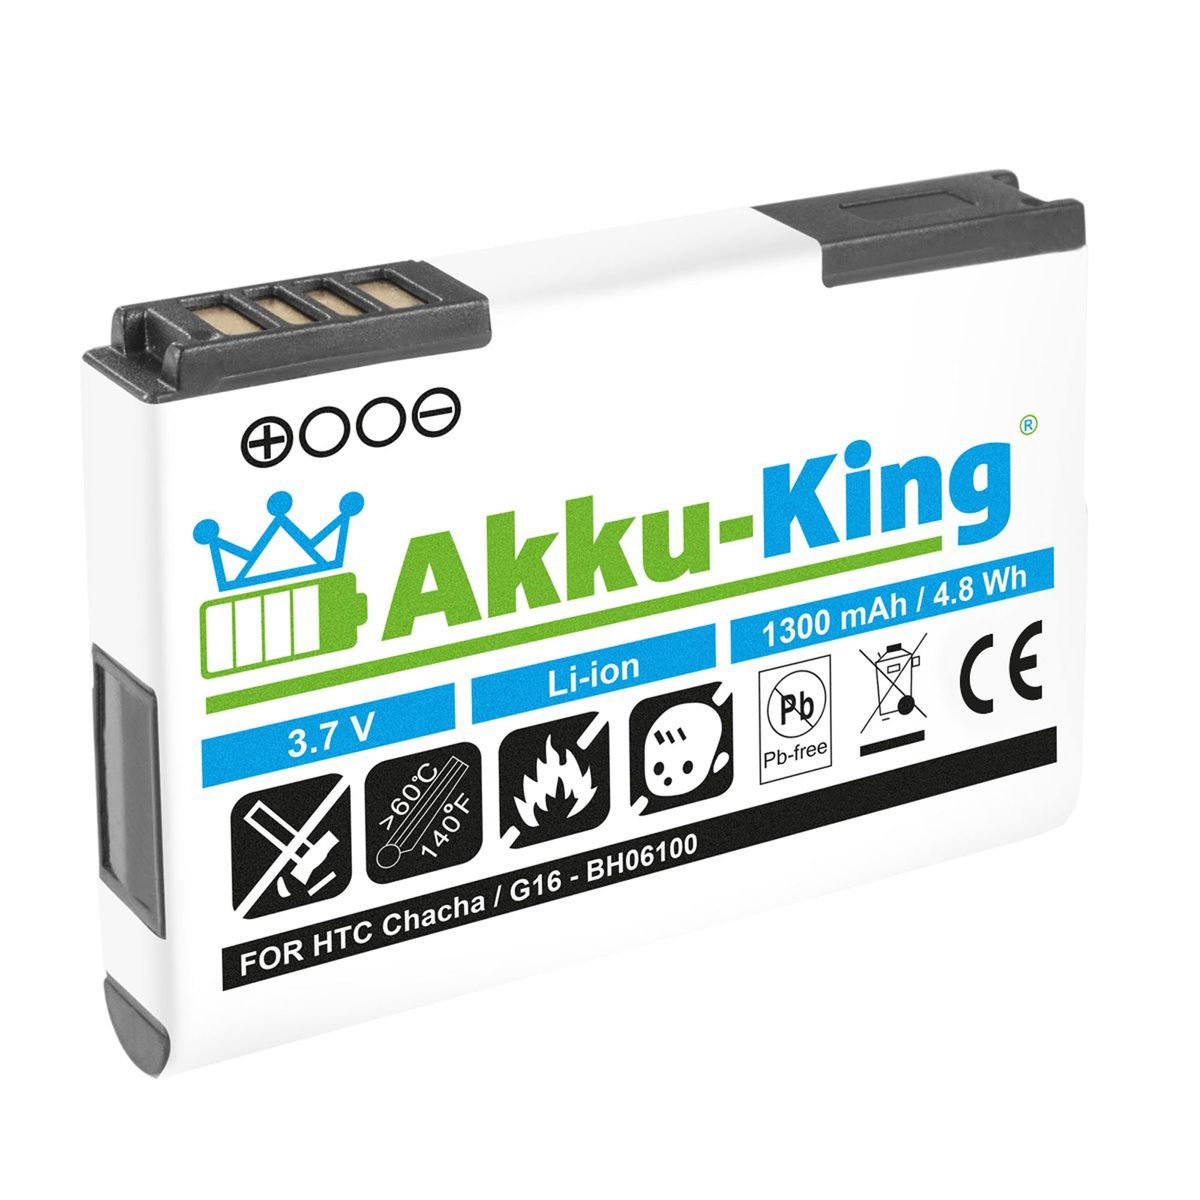 AKKU-KING Akku kompatibel HTC 3.7 1300mAh Volt, Li-Ion mit BA-S570 Handy-Akku